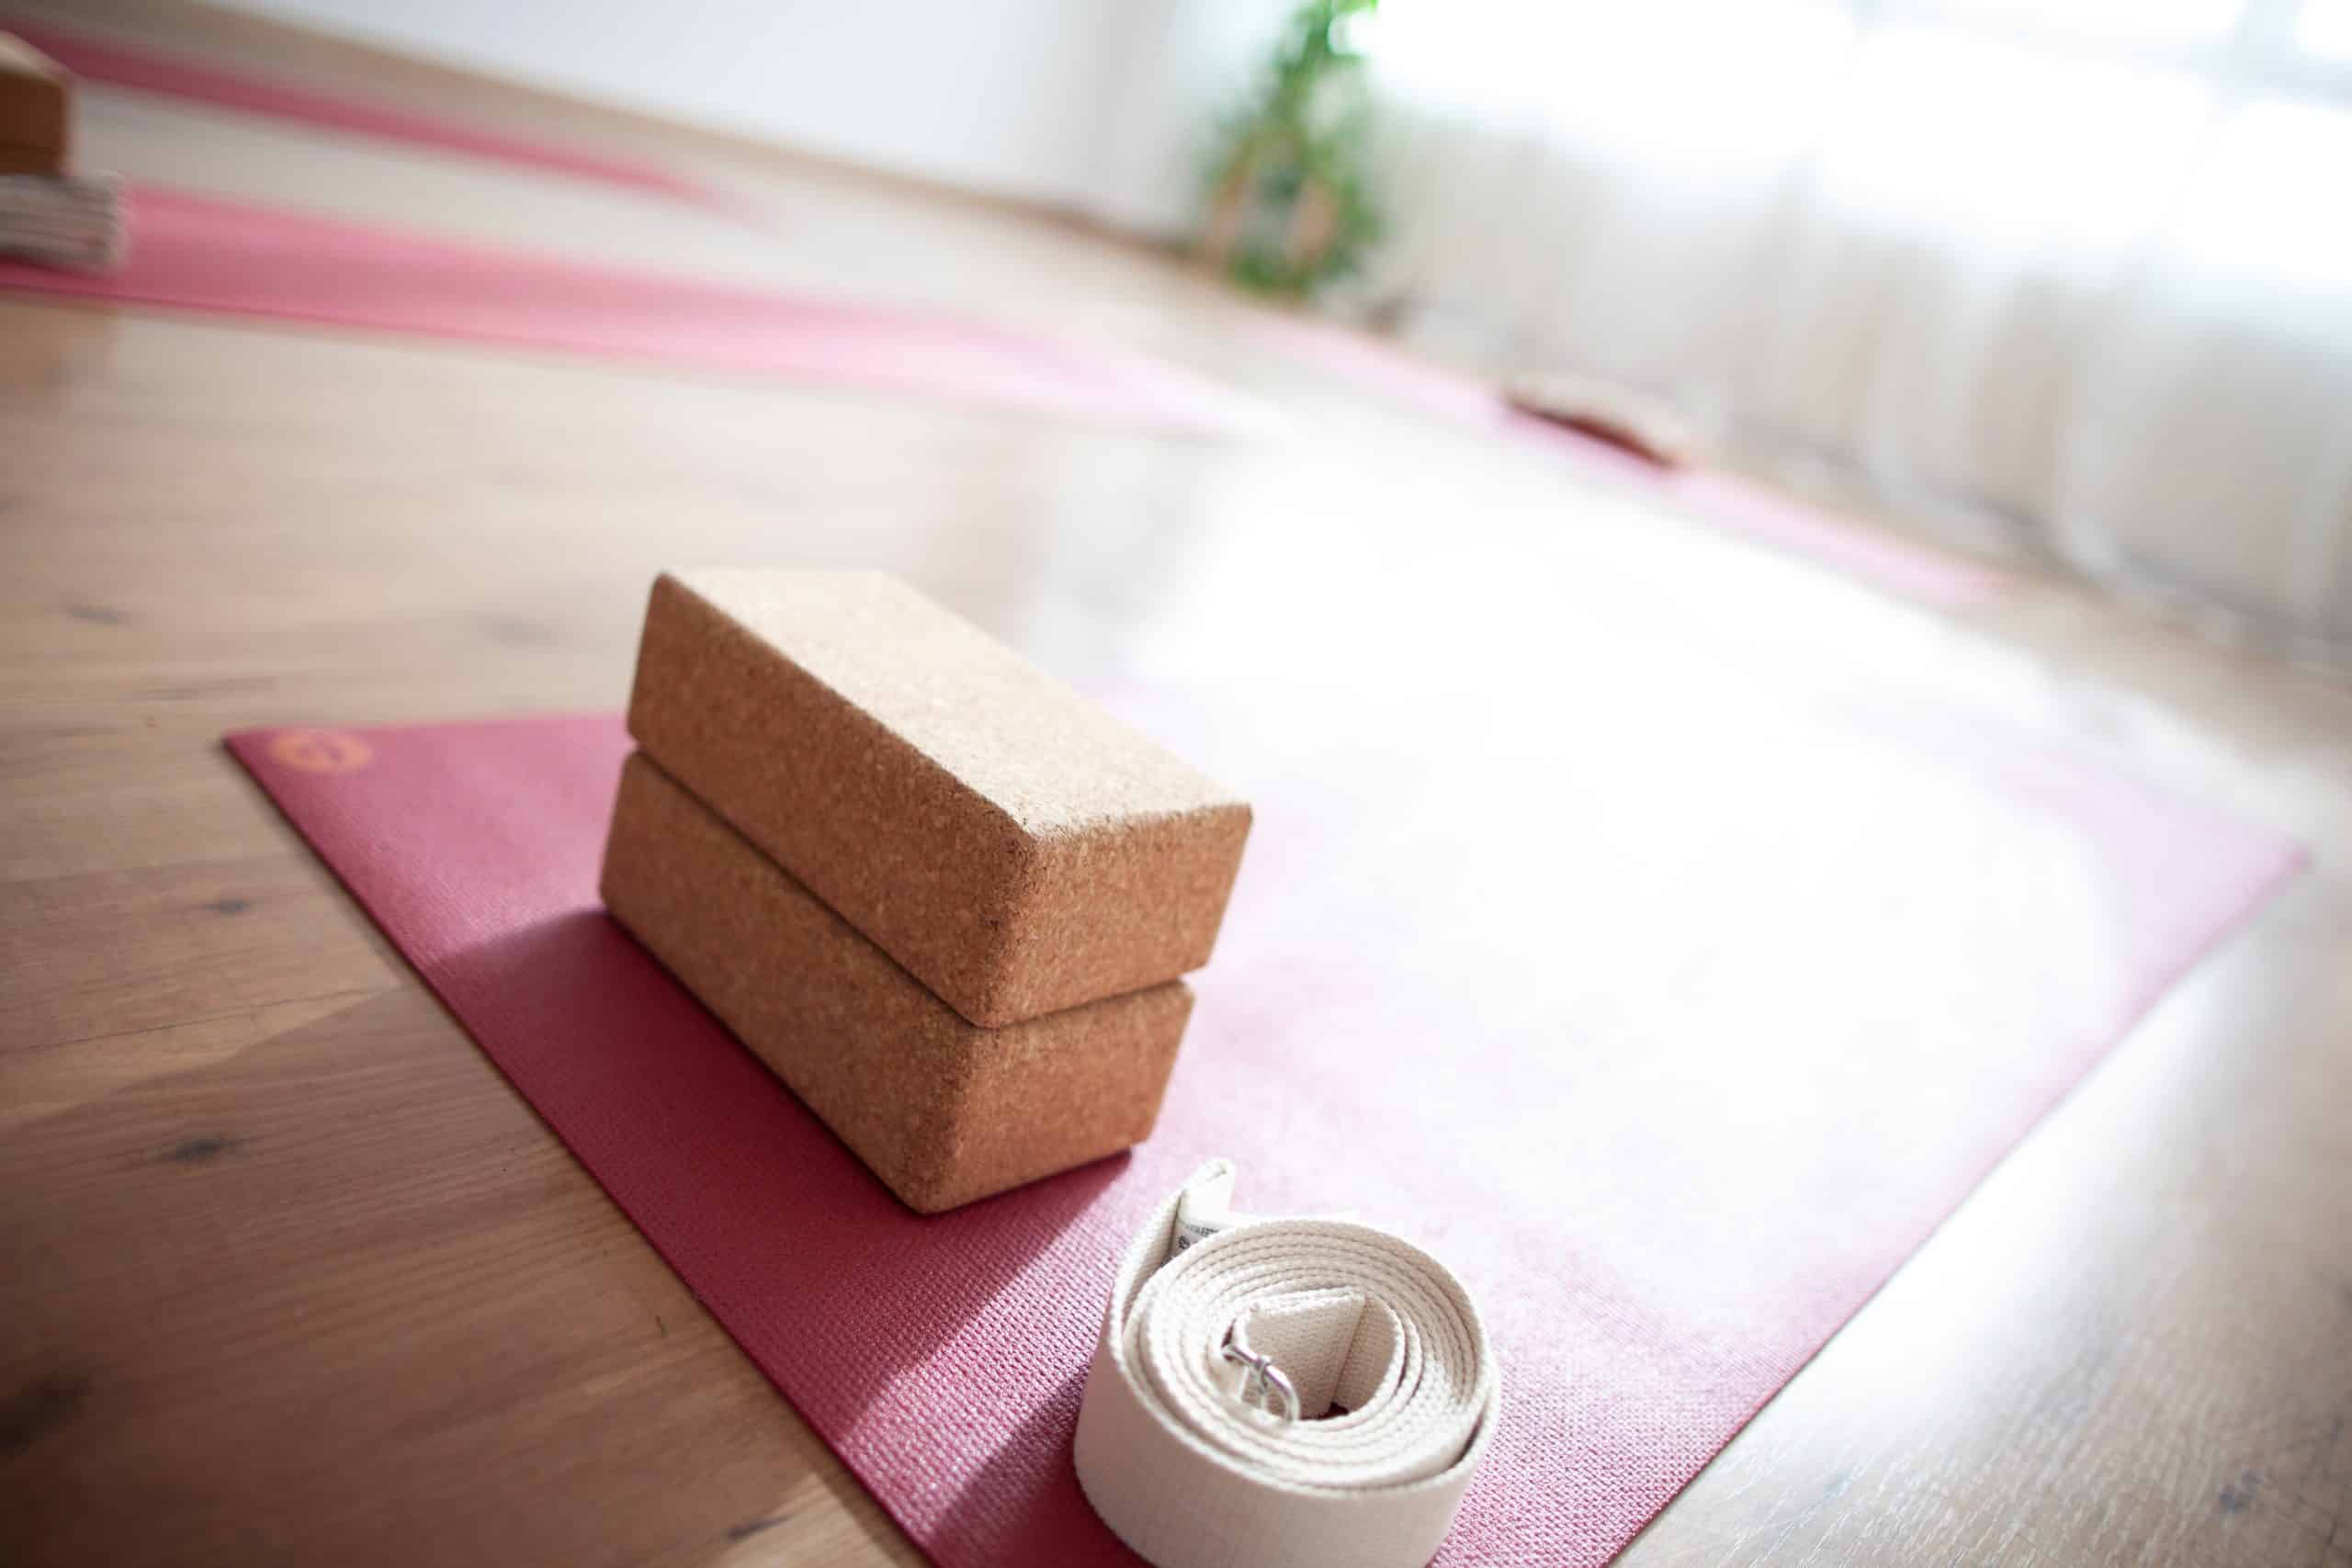 La sala de Yoga Bizia. Vemos en detalle el material para la práctica de Yoga